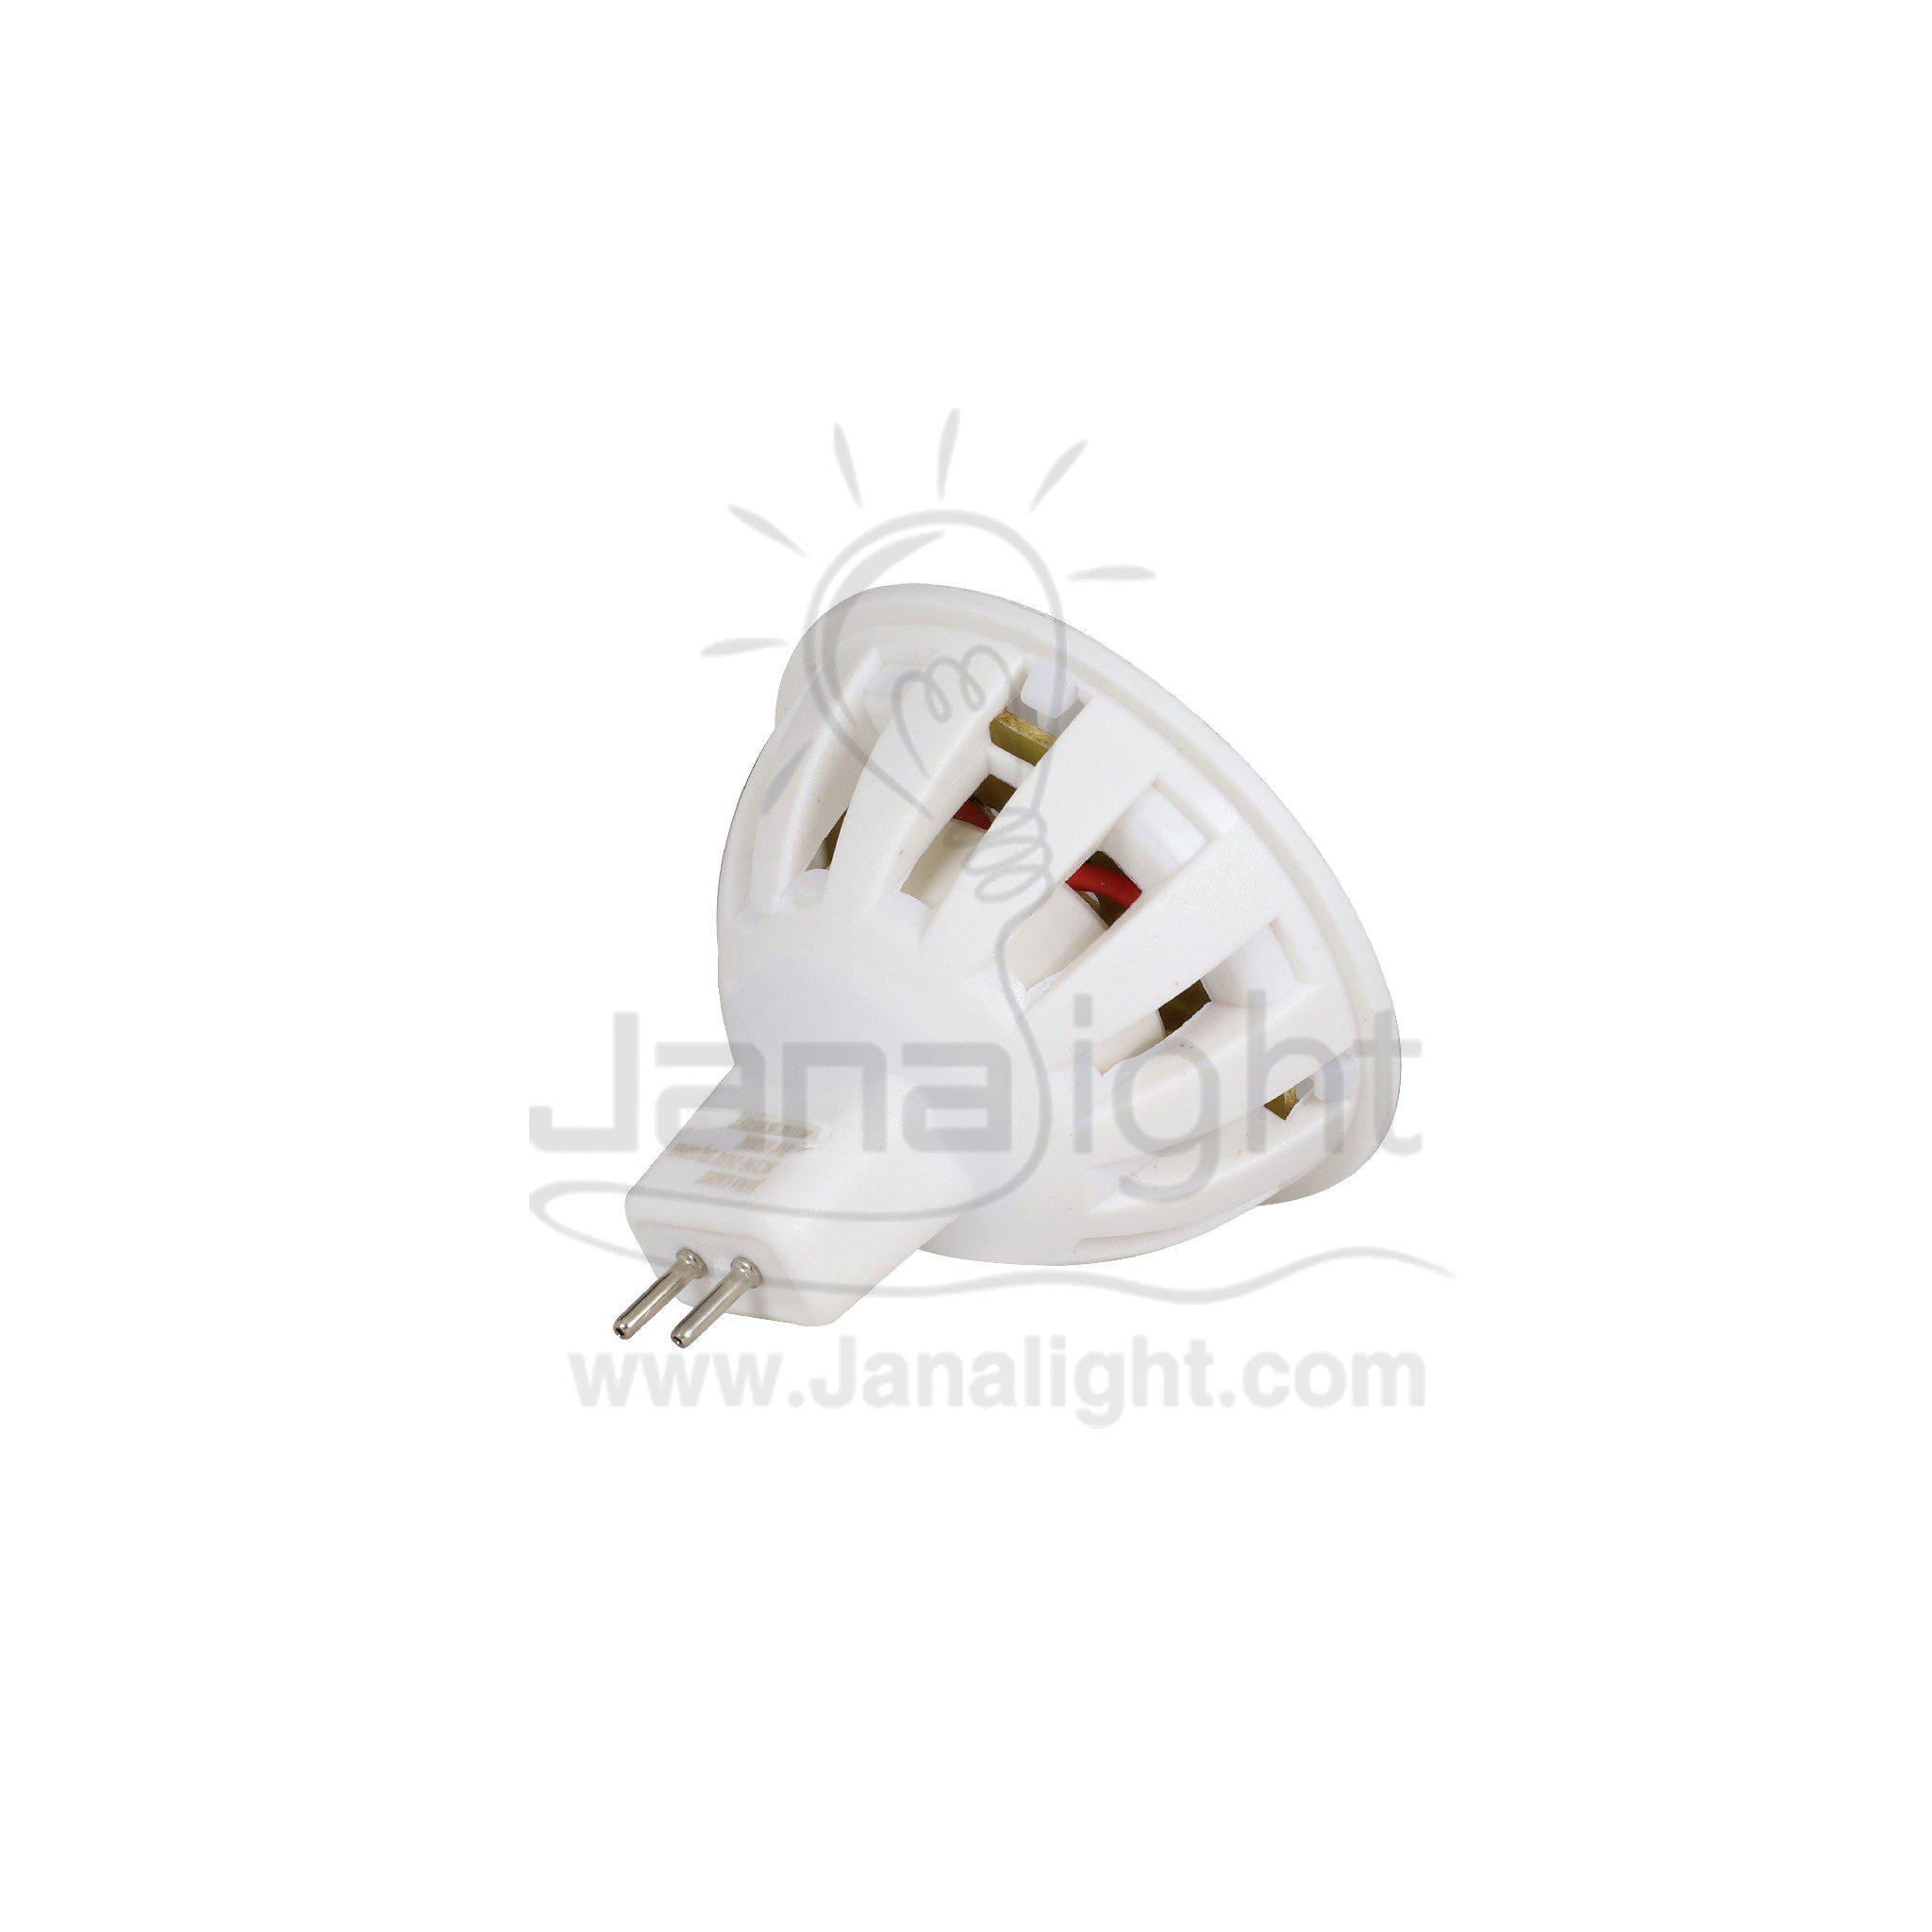 LED spot lamp 3 watt SMD white